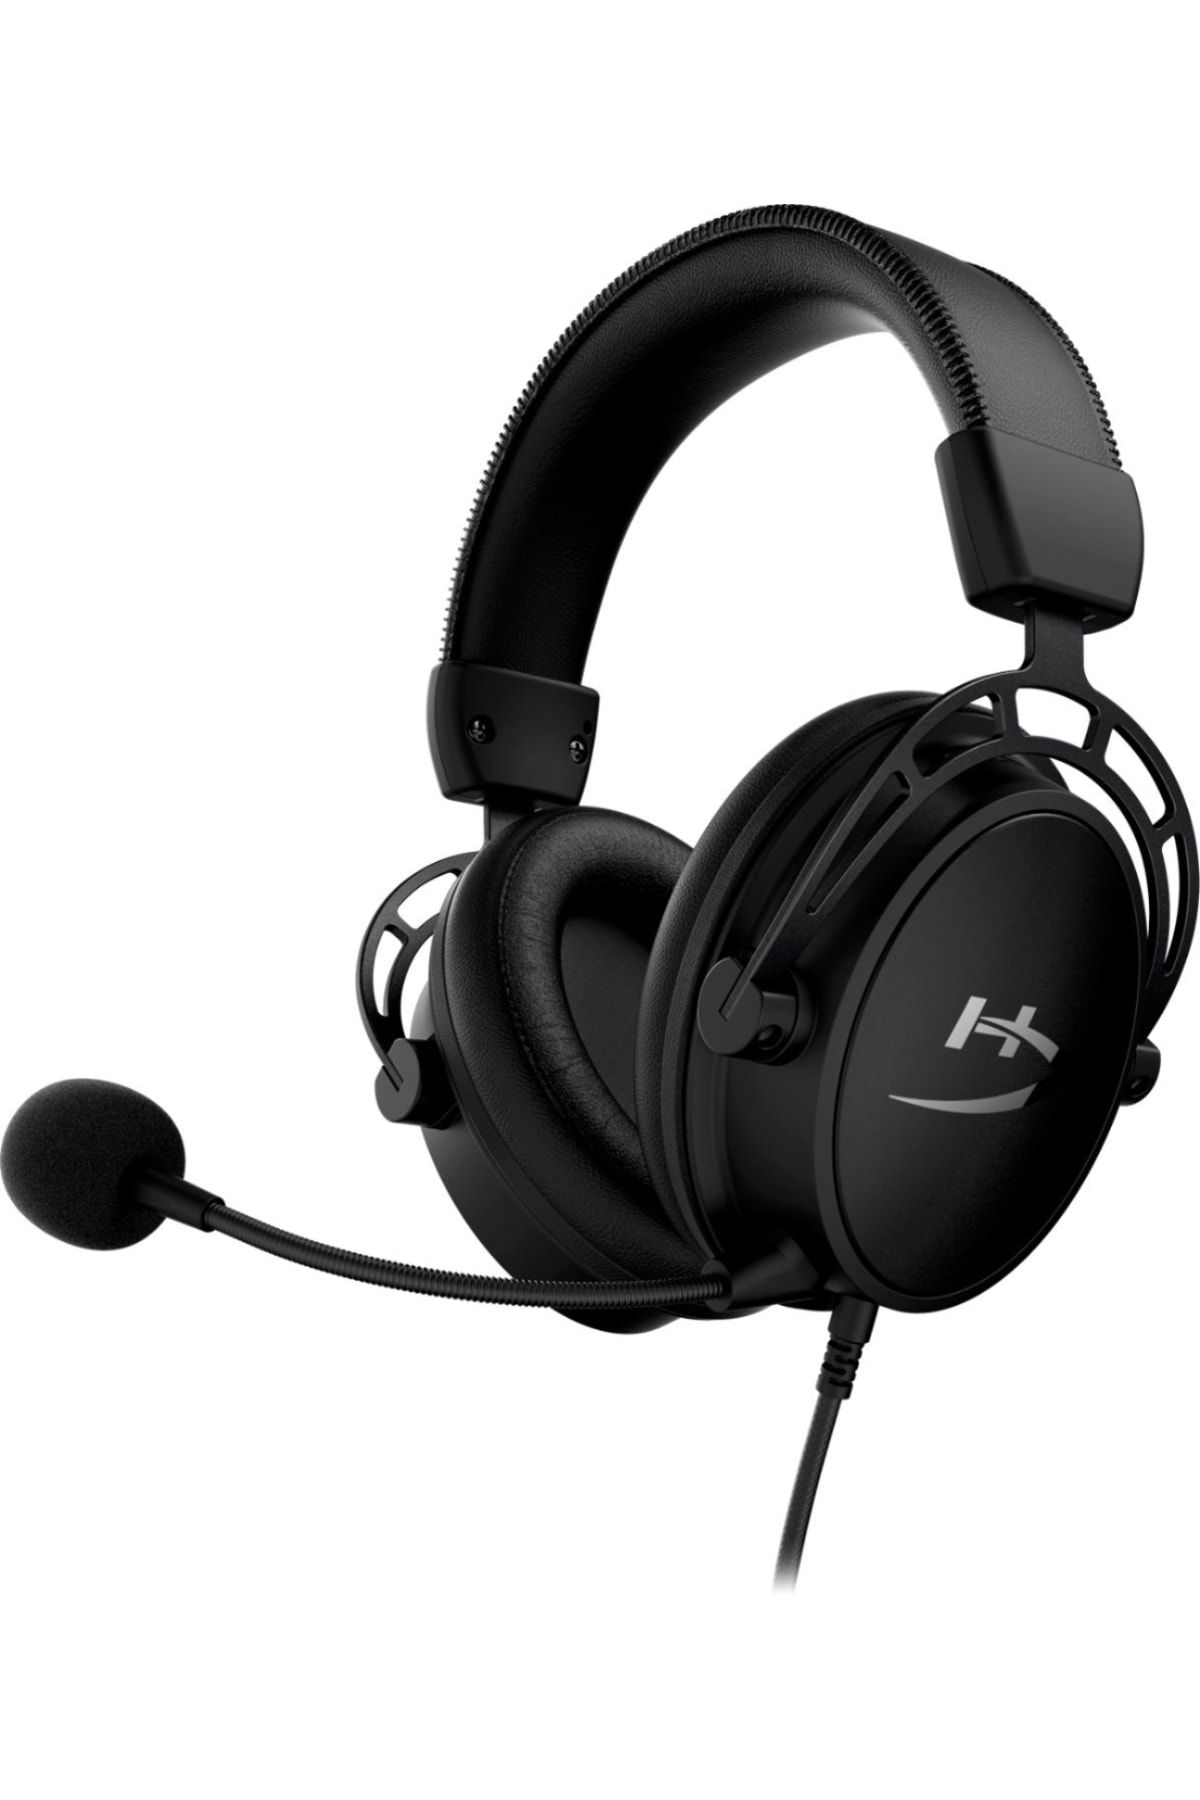 HyperX Cloud Alpha S 7.1 Kablolu Mikrofonlu Kulak Üstü Oyuncu Kulaklığı Siyah